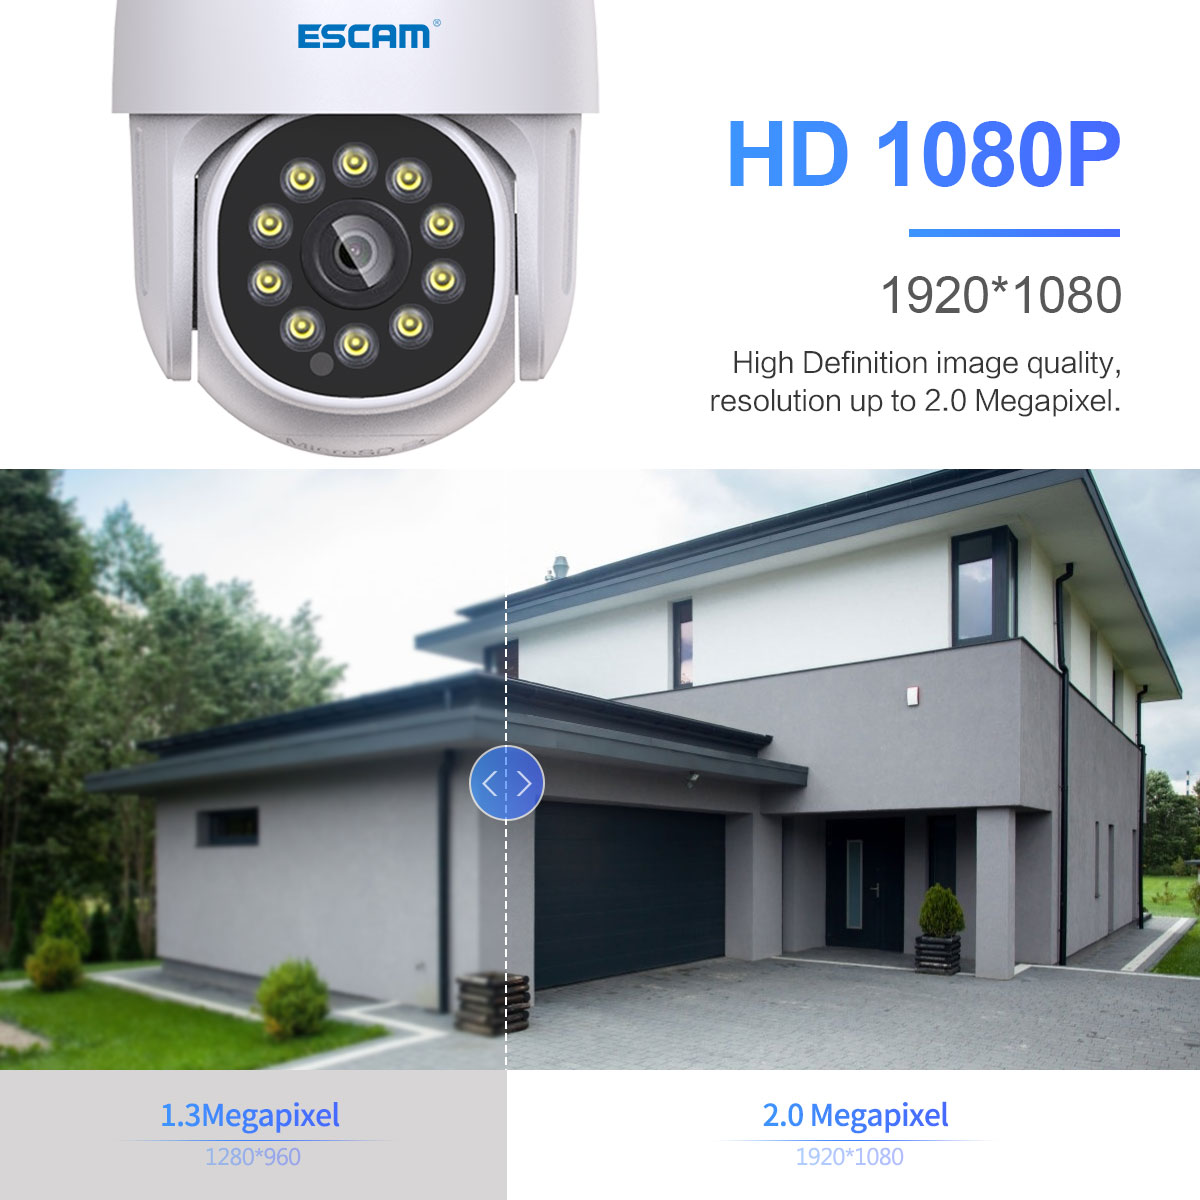 PT202 1080P WiFi IP Videocamera Visione Notturna Rilevamento Automatico delle Figure Umane per ESCAM 7